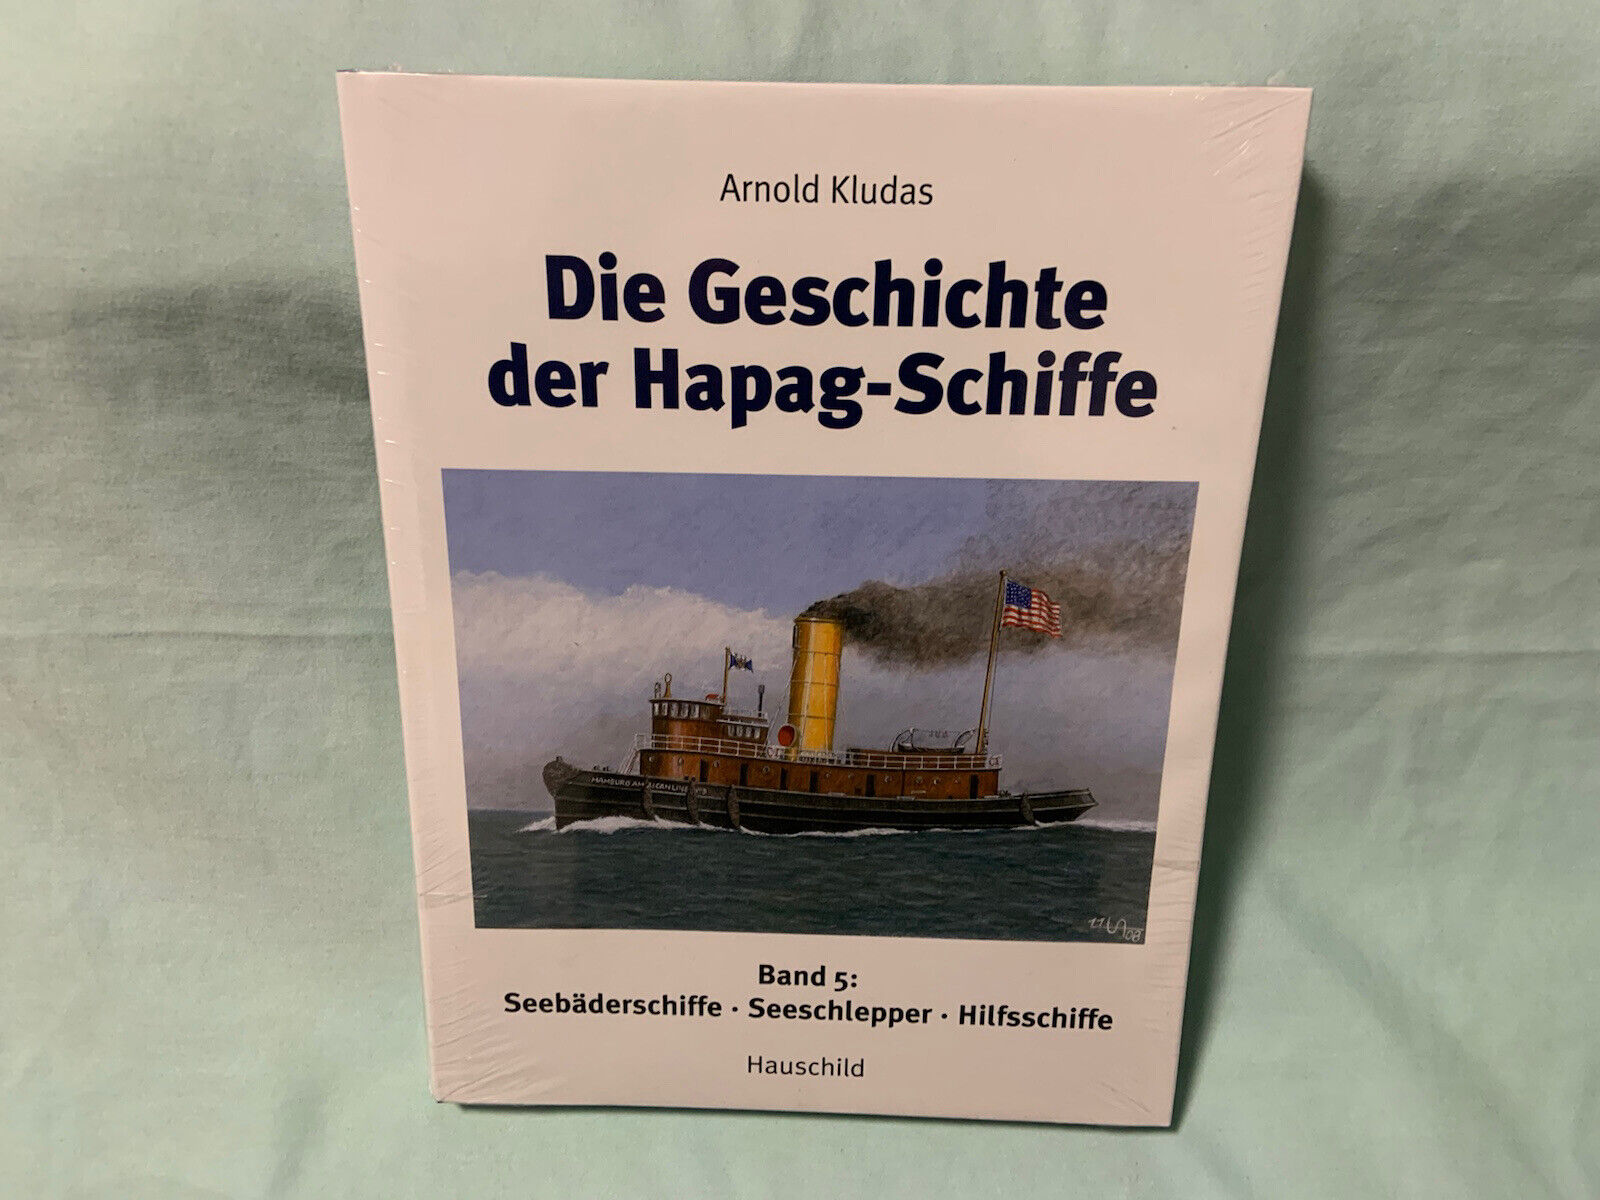 Die Geschichte der Hapag-Schiffe  Band 5 - Seebäderschiffe, Seeschlepper NEU&OVP - Arnold Kludas